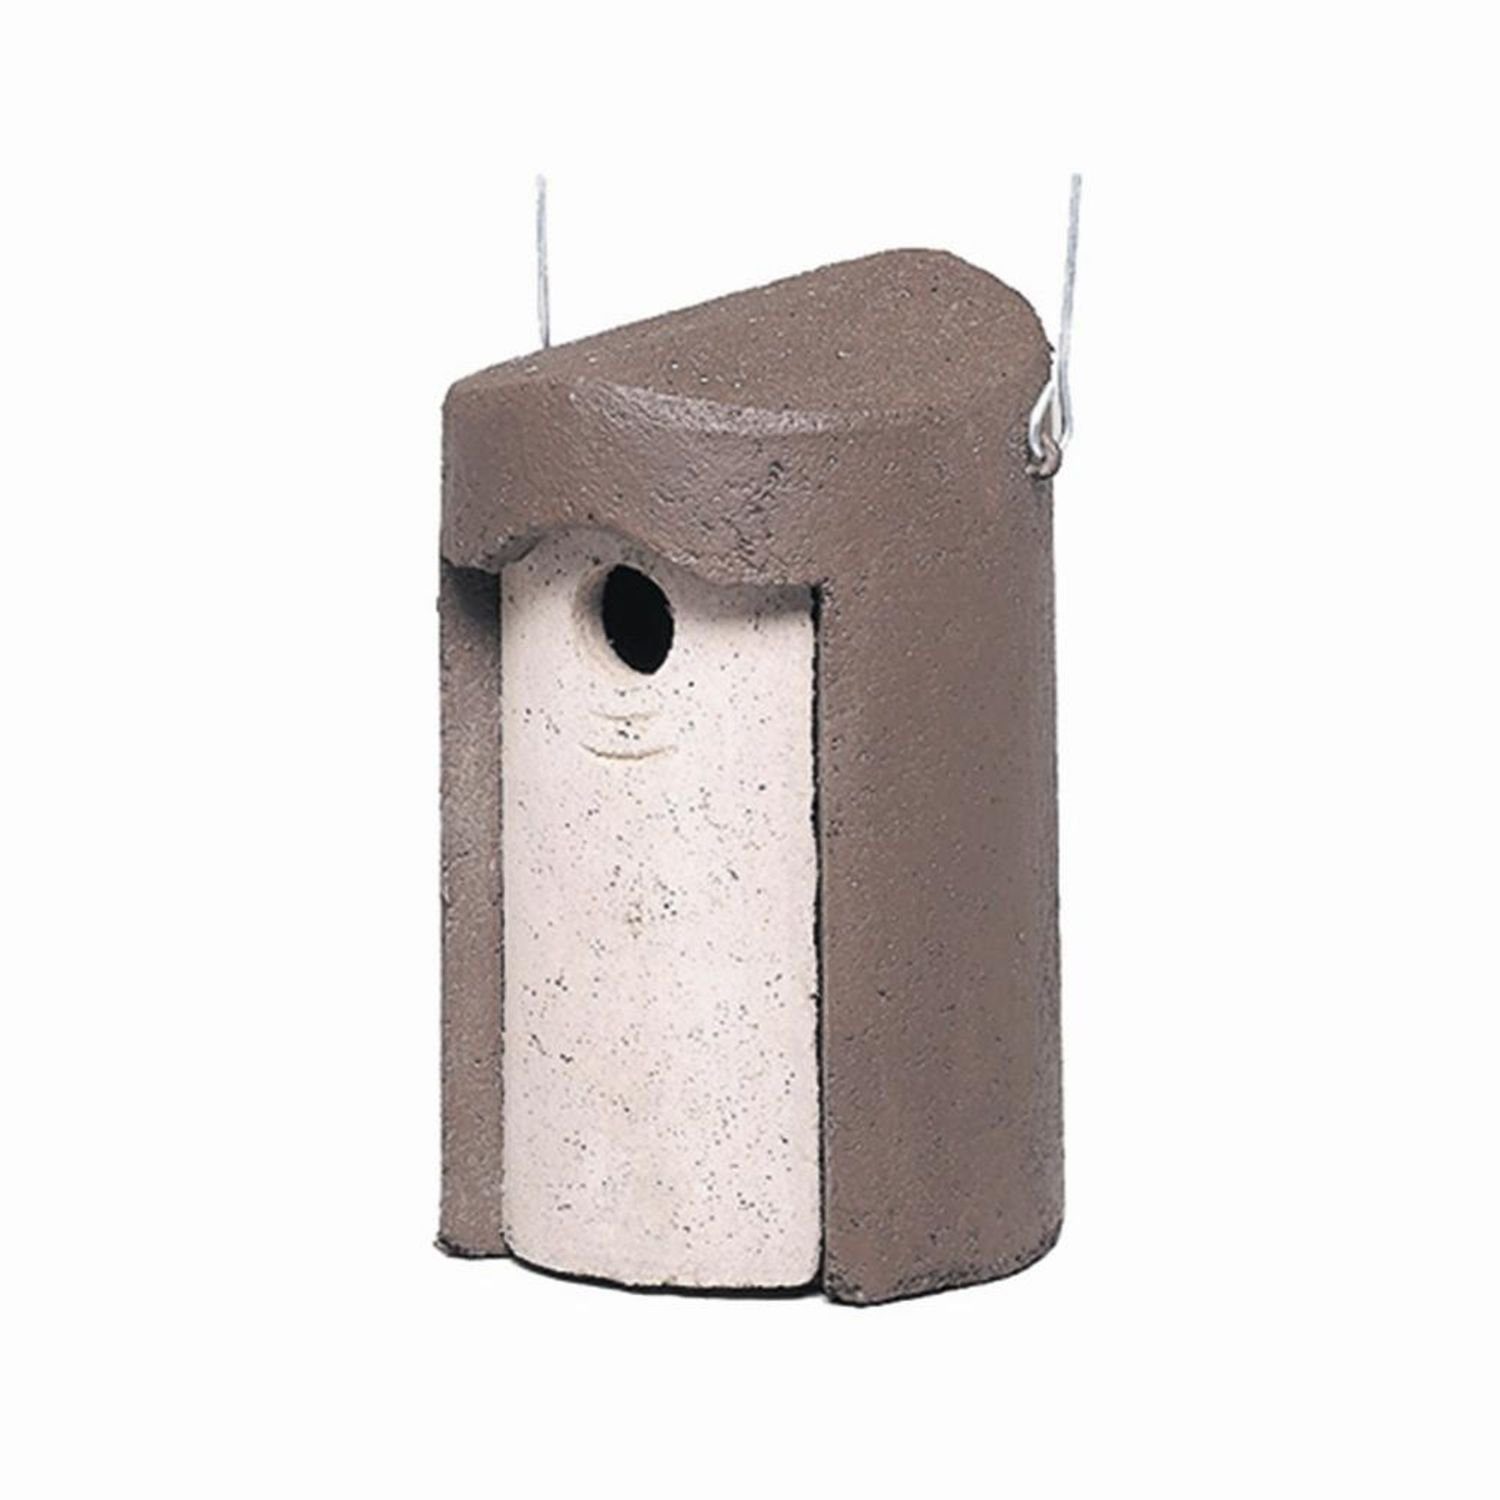 Schwegler Vogelhaus Nisthöhle mit 26 mm Flugloch geeignet für Kleinvögel